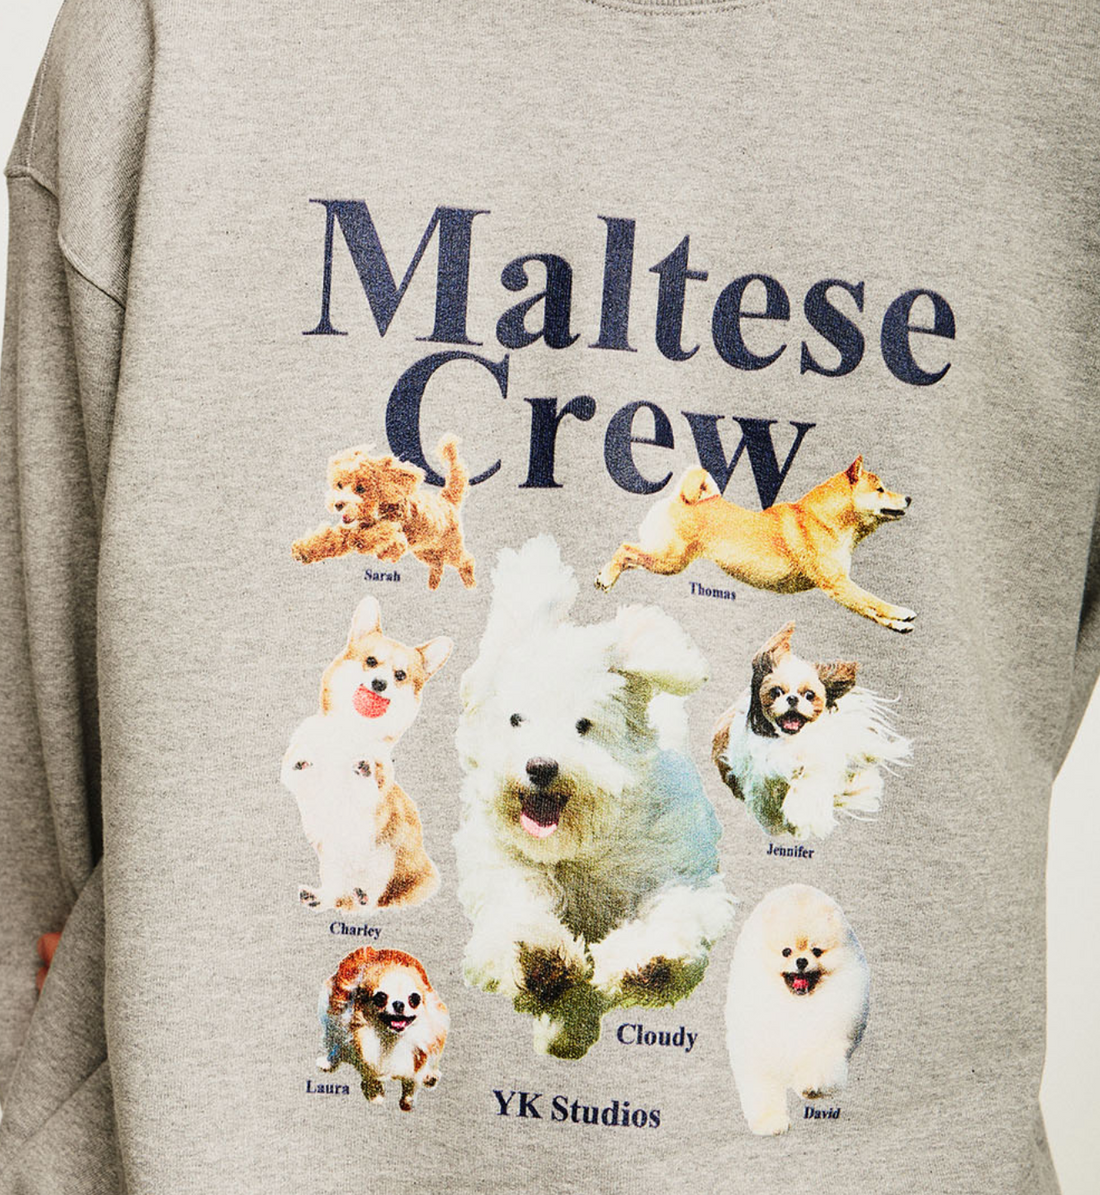 WAIKEI Maltese Crew Sweatshirts GREY